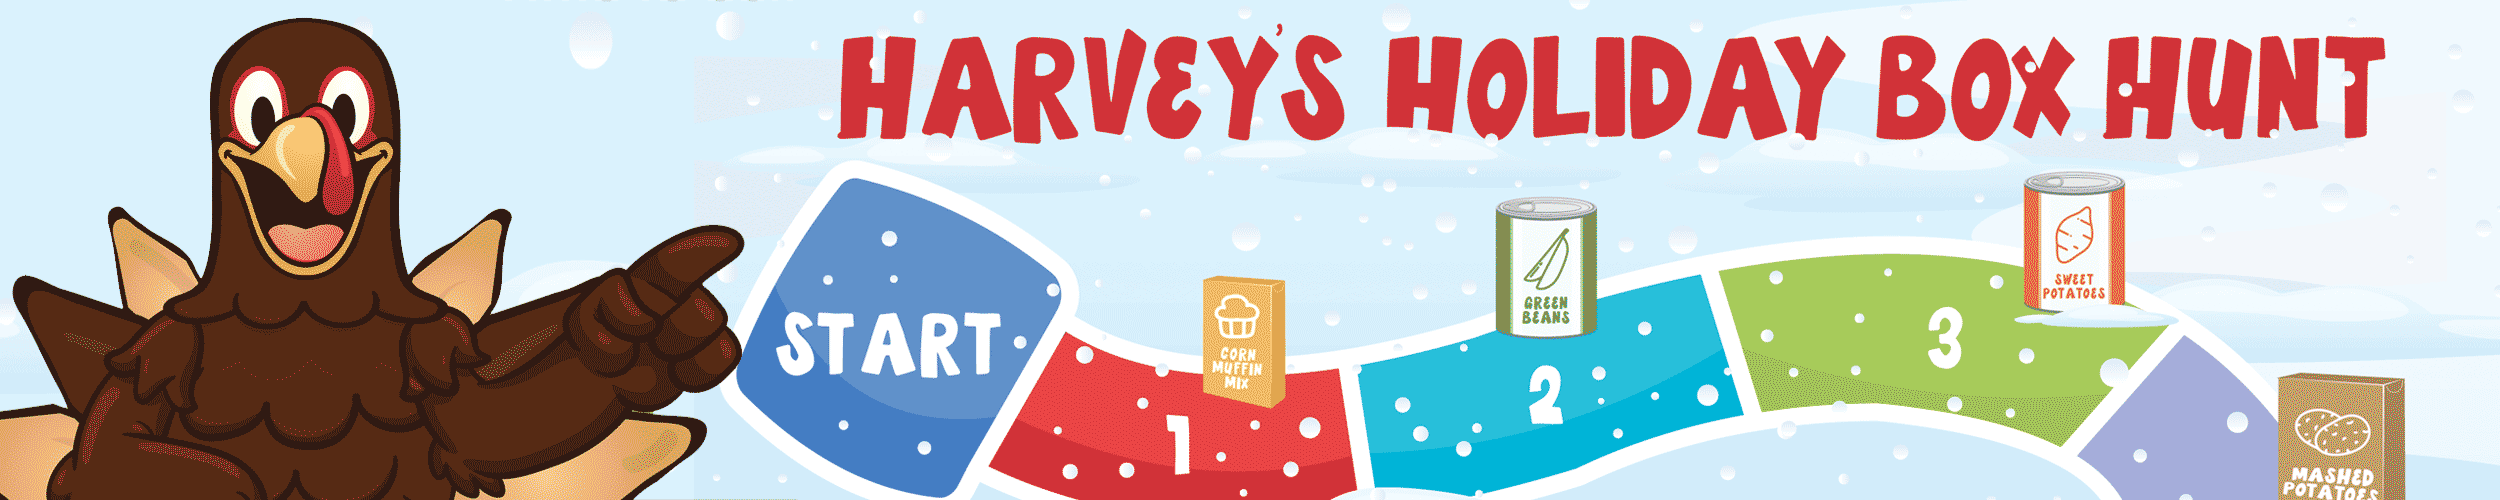 Harvey's Holiday Box Hunt